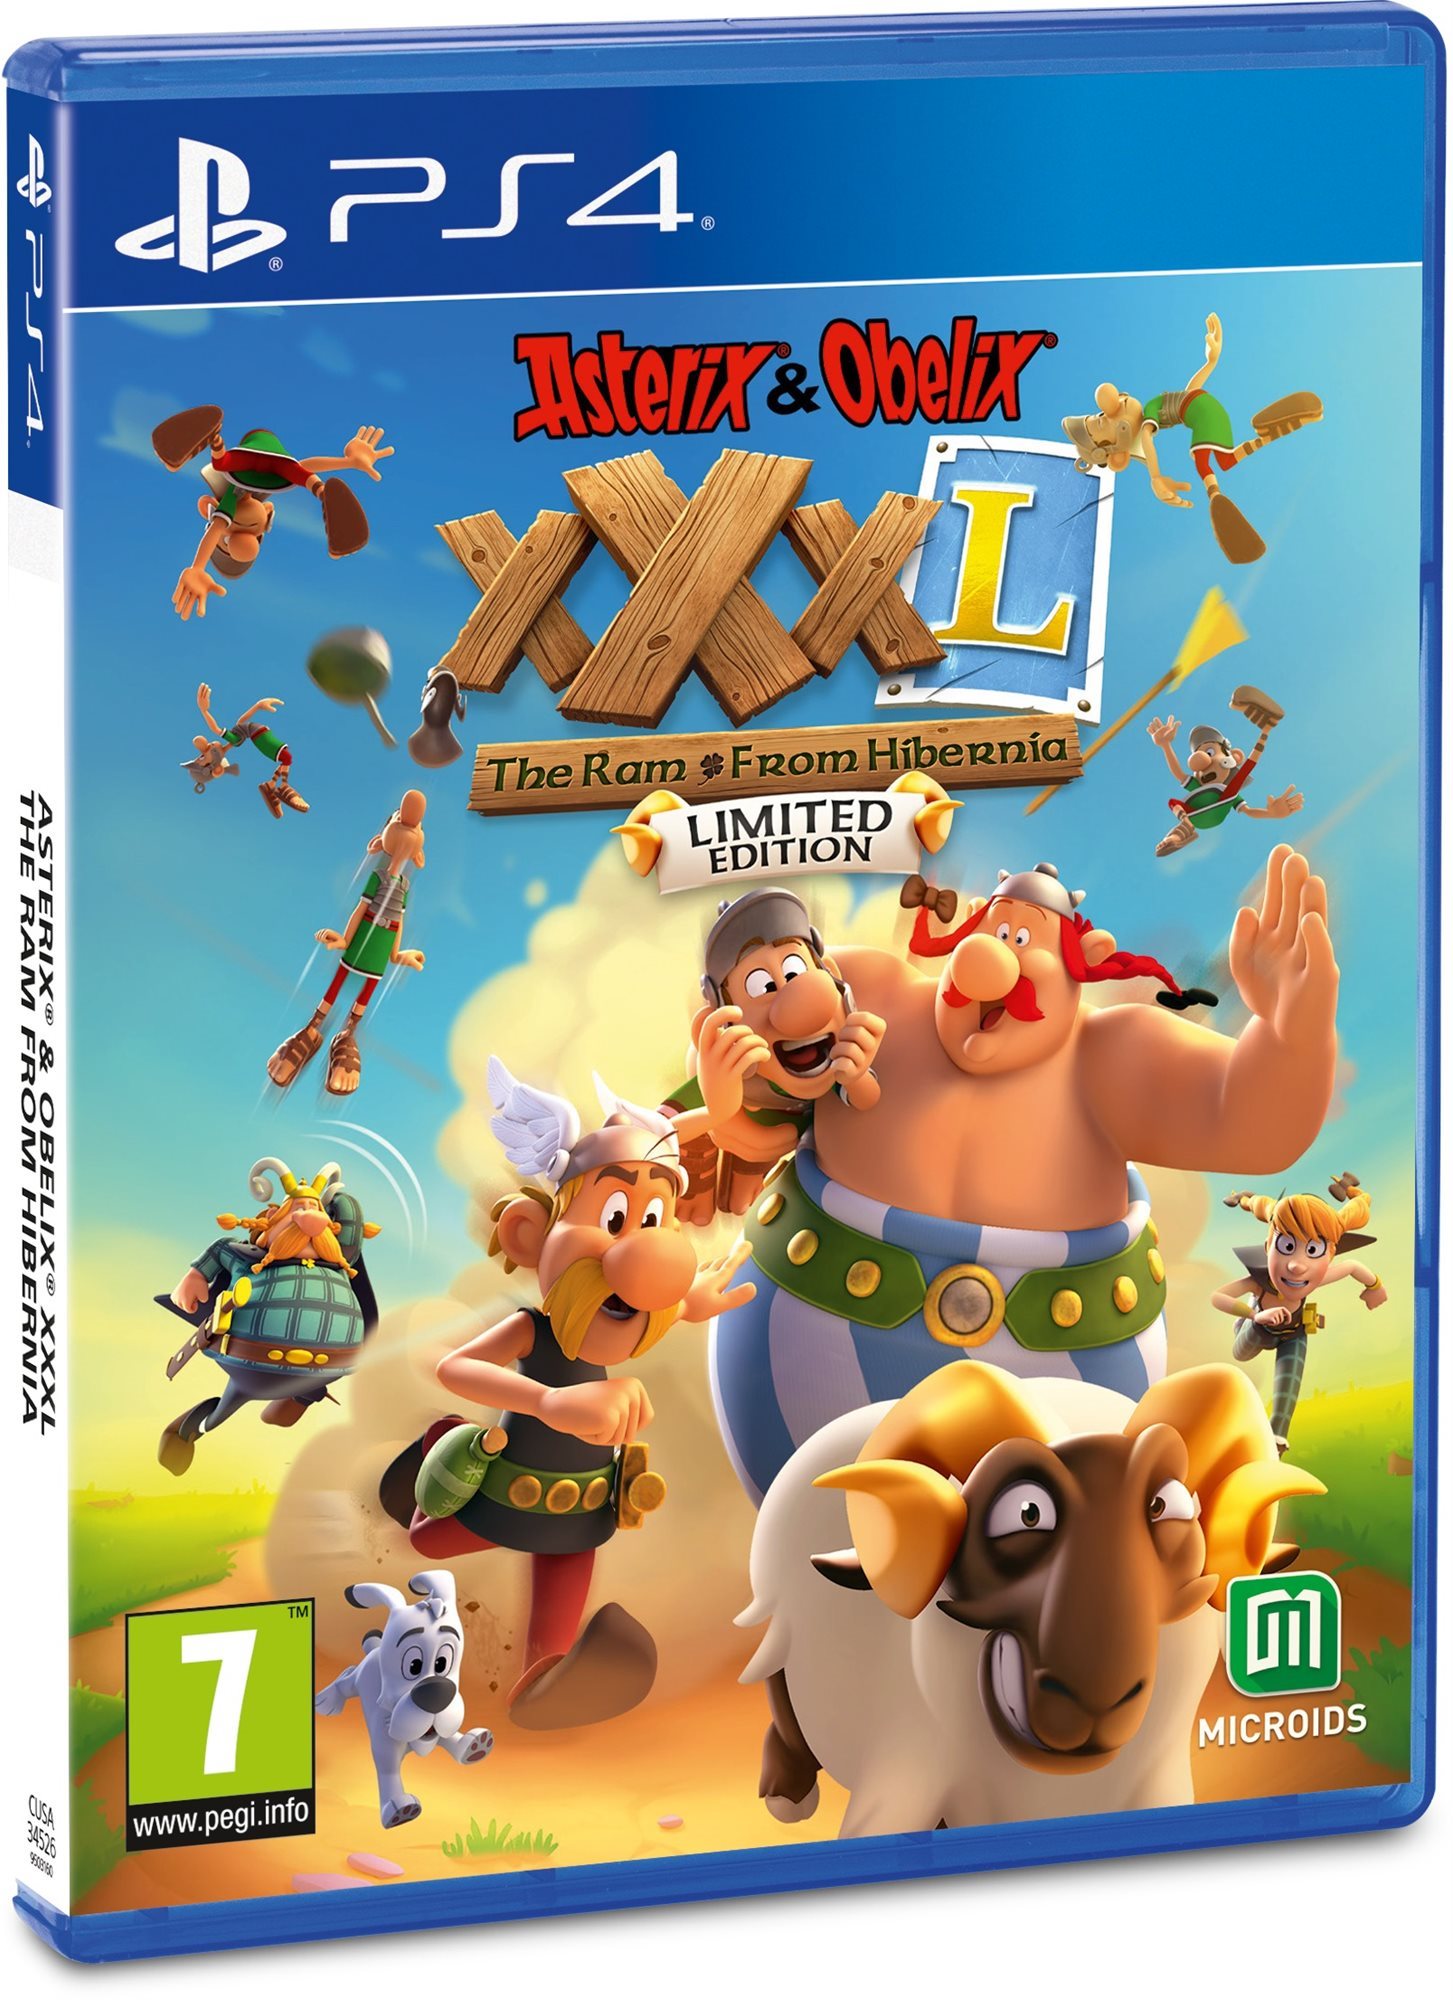 Konzol játék Asterix & Obelix XXXL: The Ram From Hibernia - Limited Edition - PS4